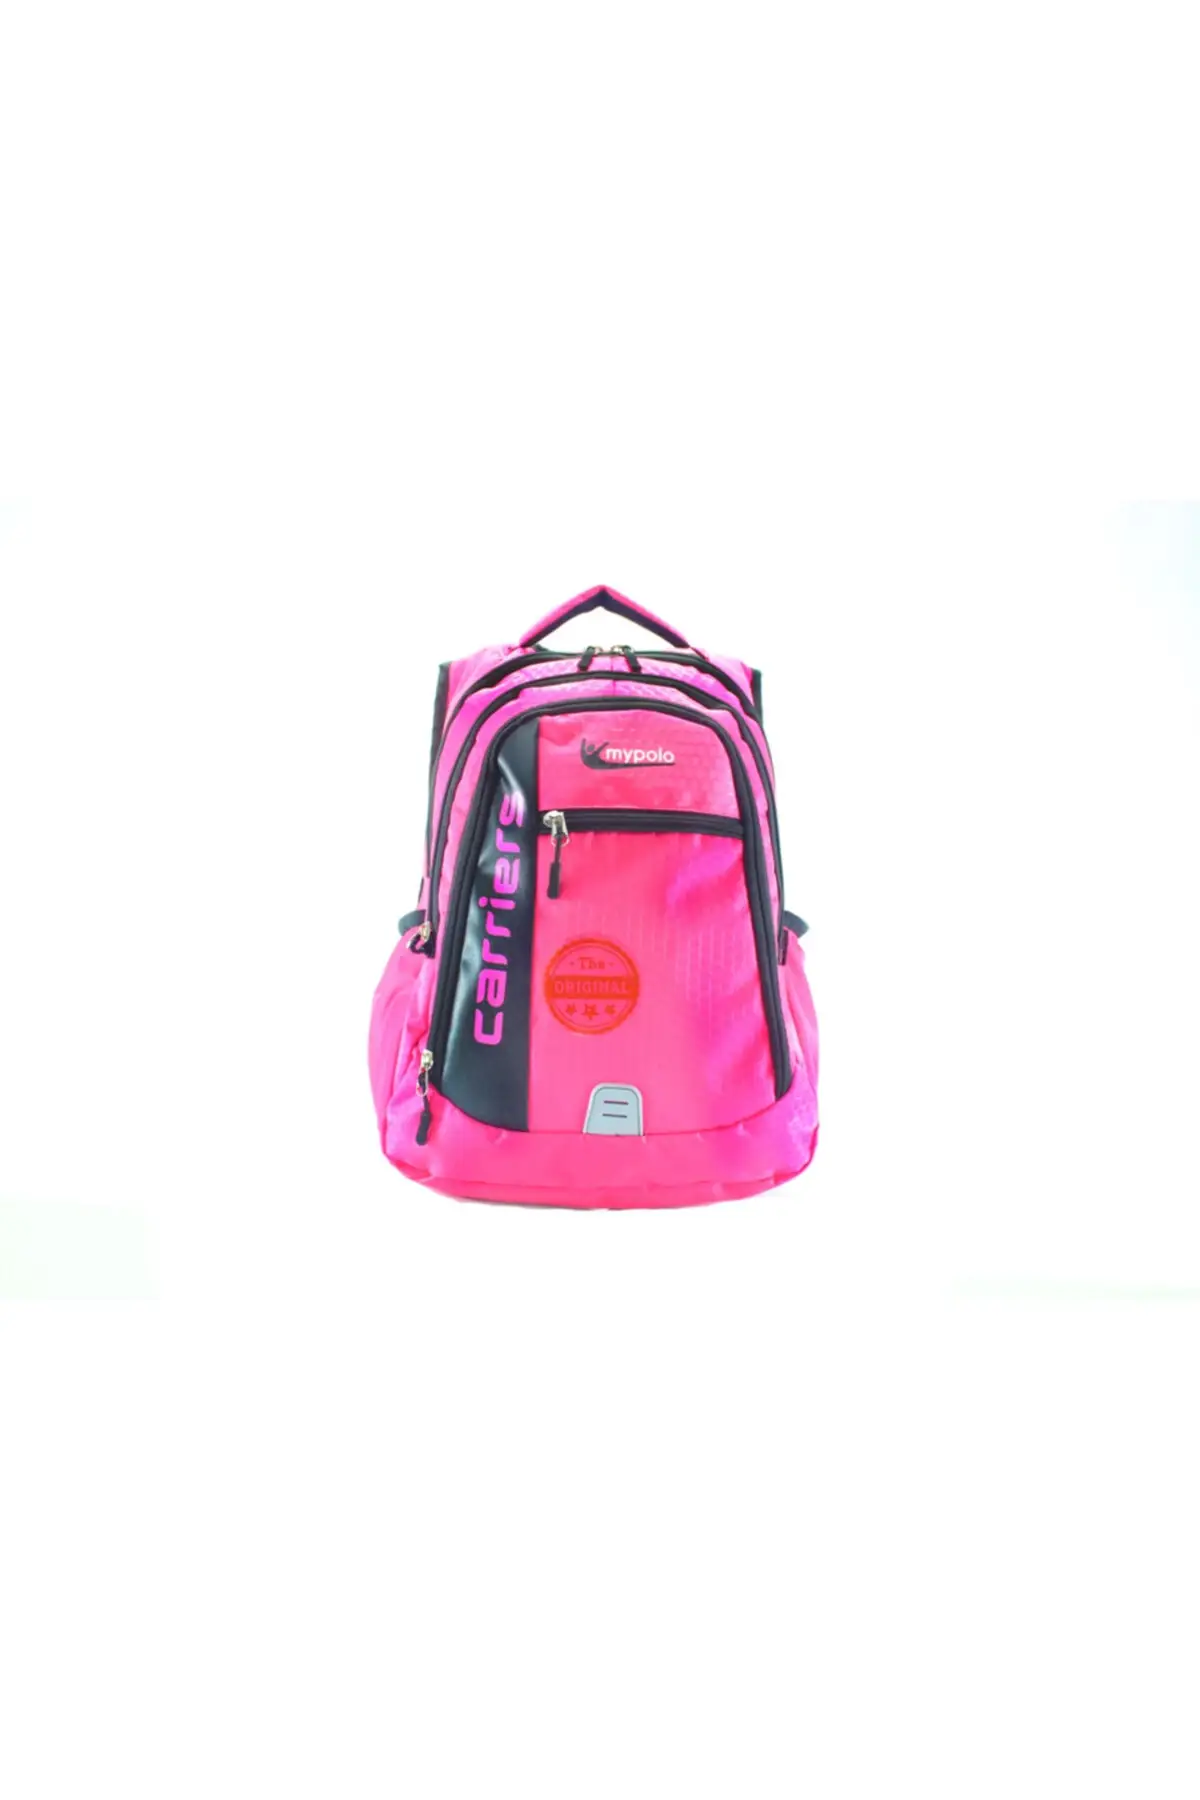 

Lamia школьная сумка унисекс, классные детские рюкзаки, сумки, игрушки, светильник маленькие, для детей, для ежедневного использования